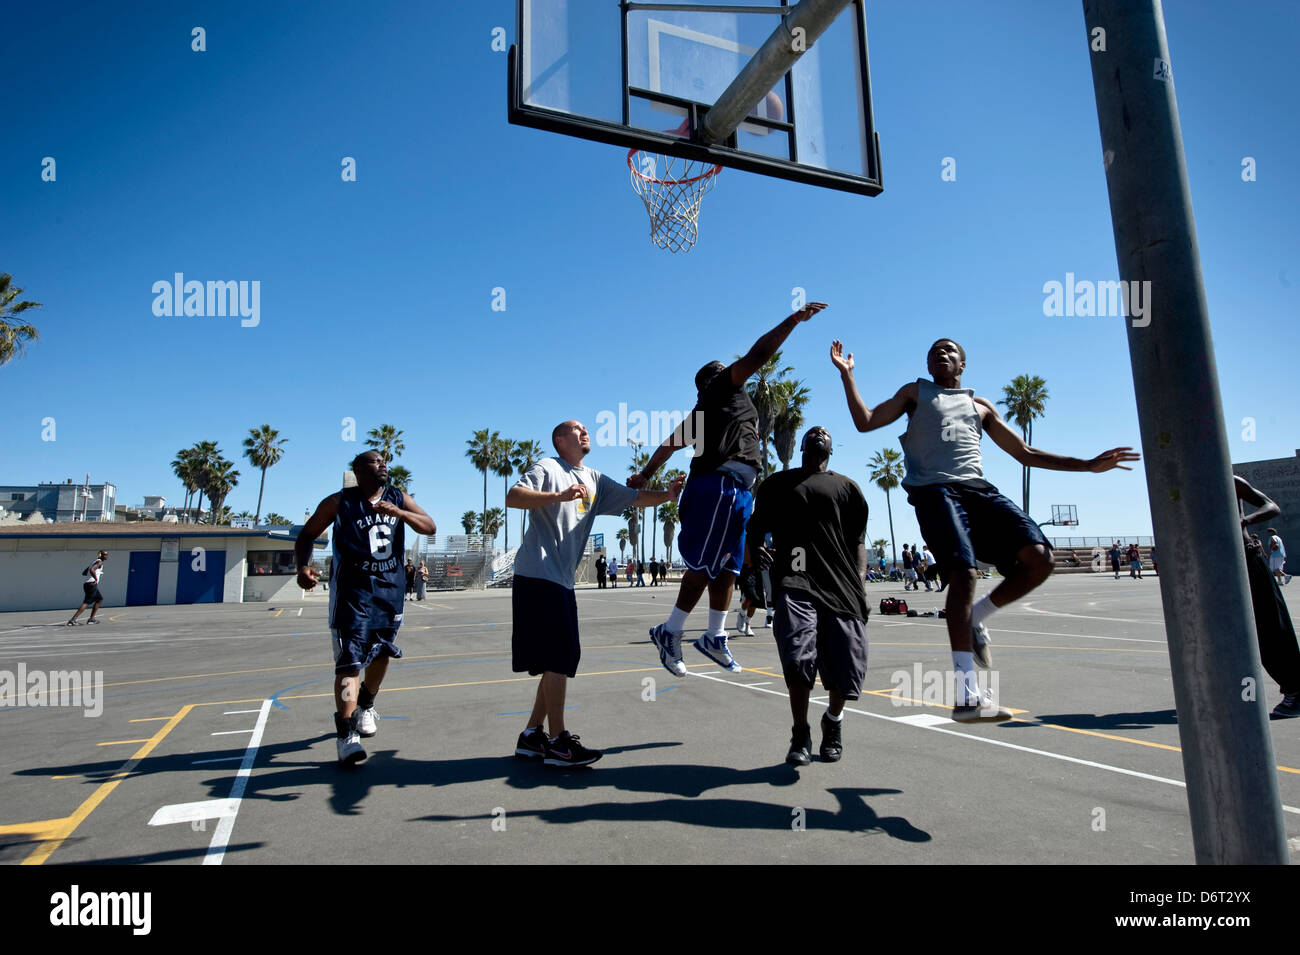 Venice Beach, Santa Monica, California, USA, April 10, 2013: a group of men play basketball on a public court Stock Photo